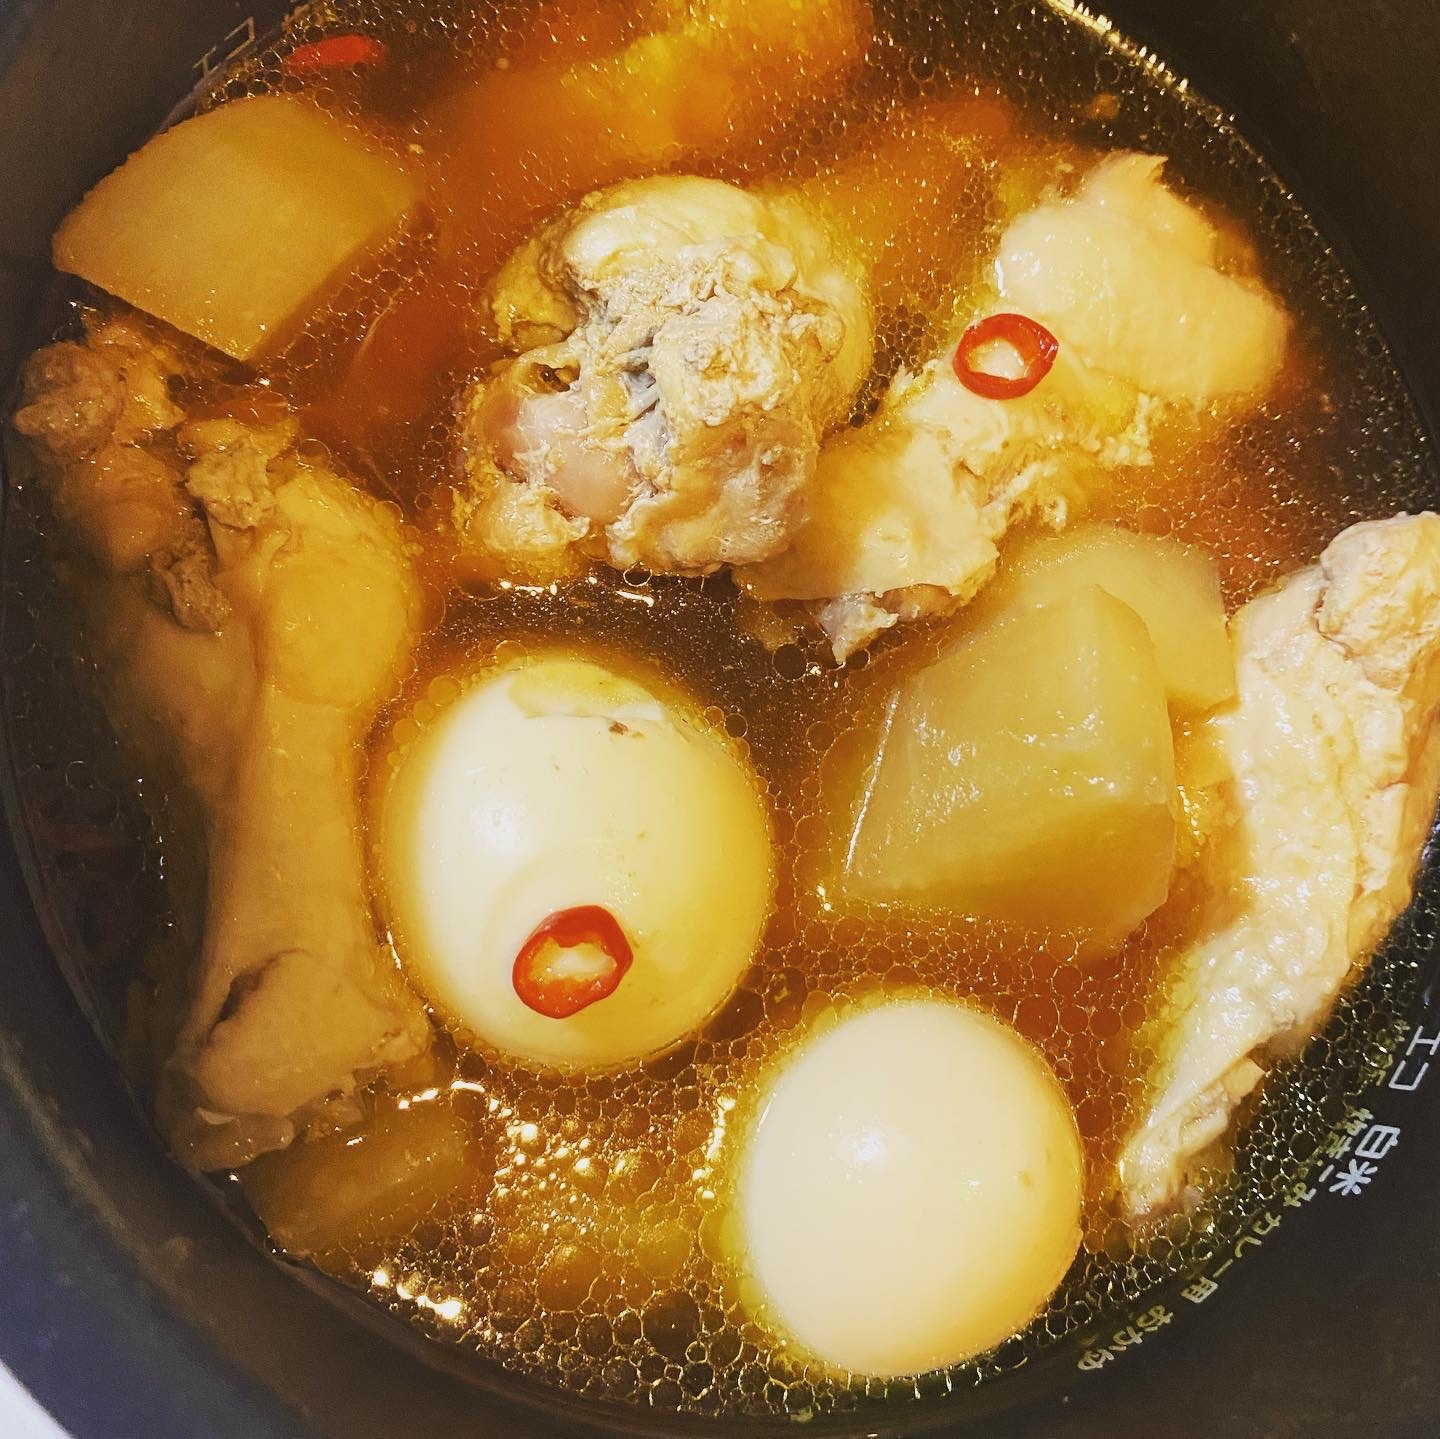 炊飯器で鶏と大根の煮物